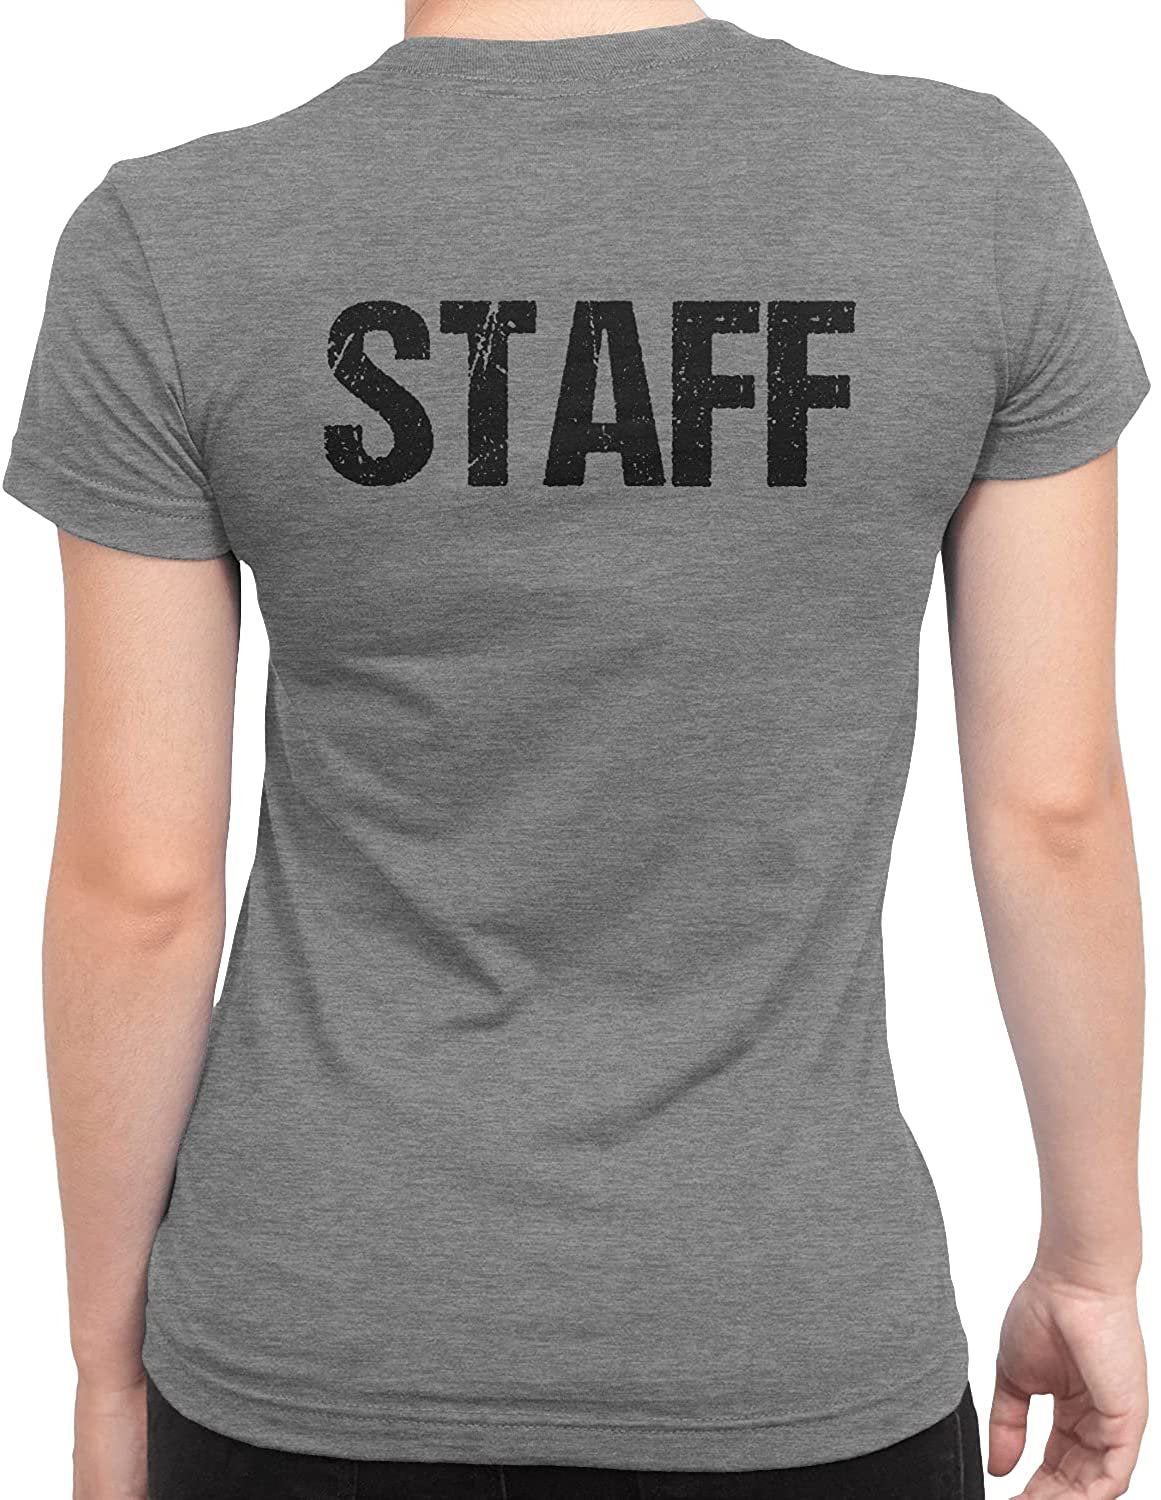 T-shirt à manches courtes pour femmes Staff (motif vieilli, gris chiné et noir)